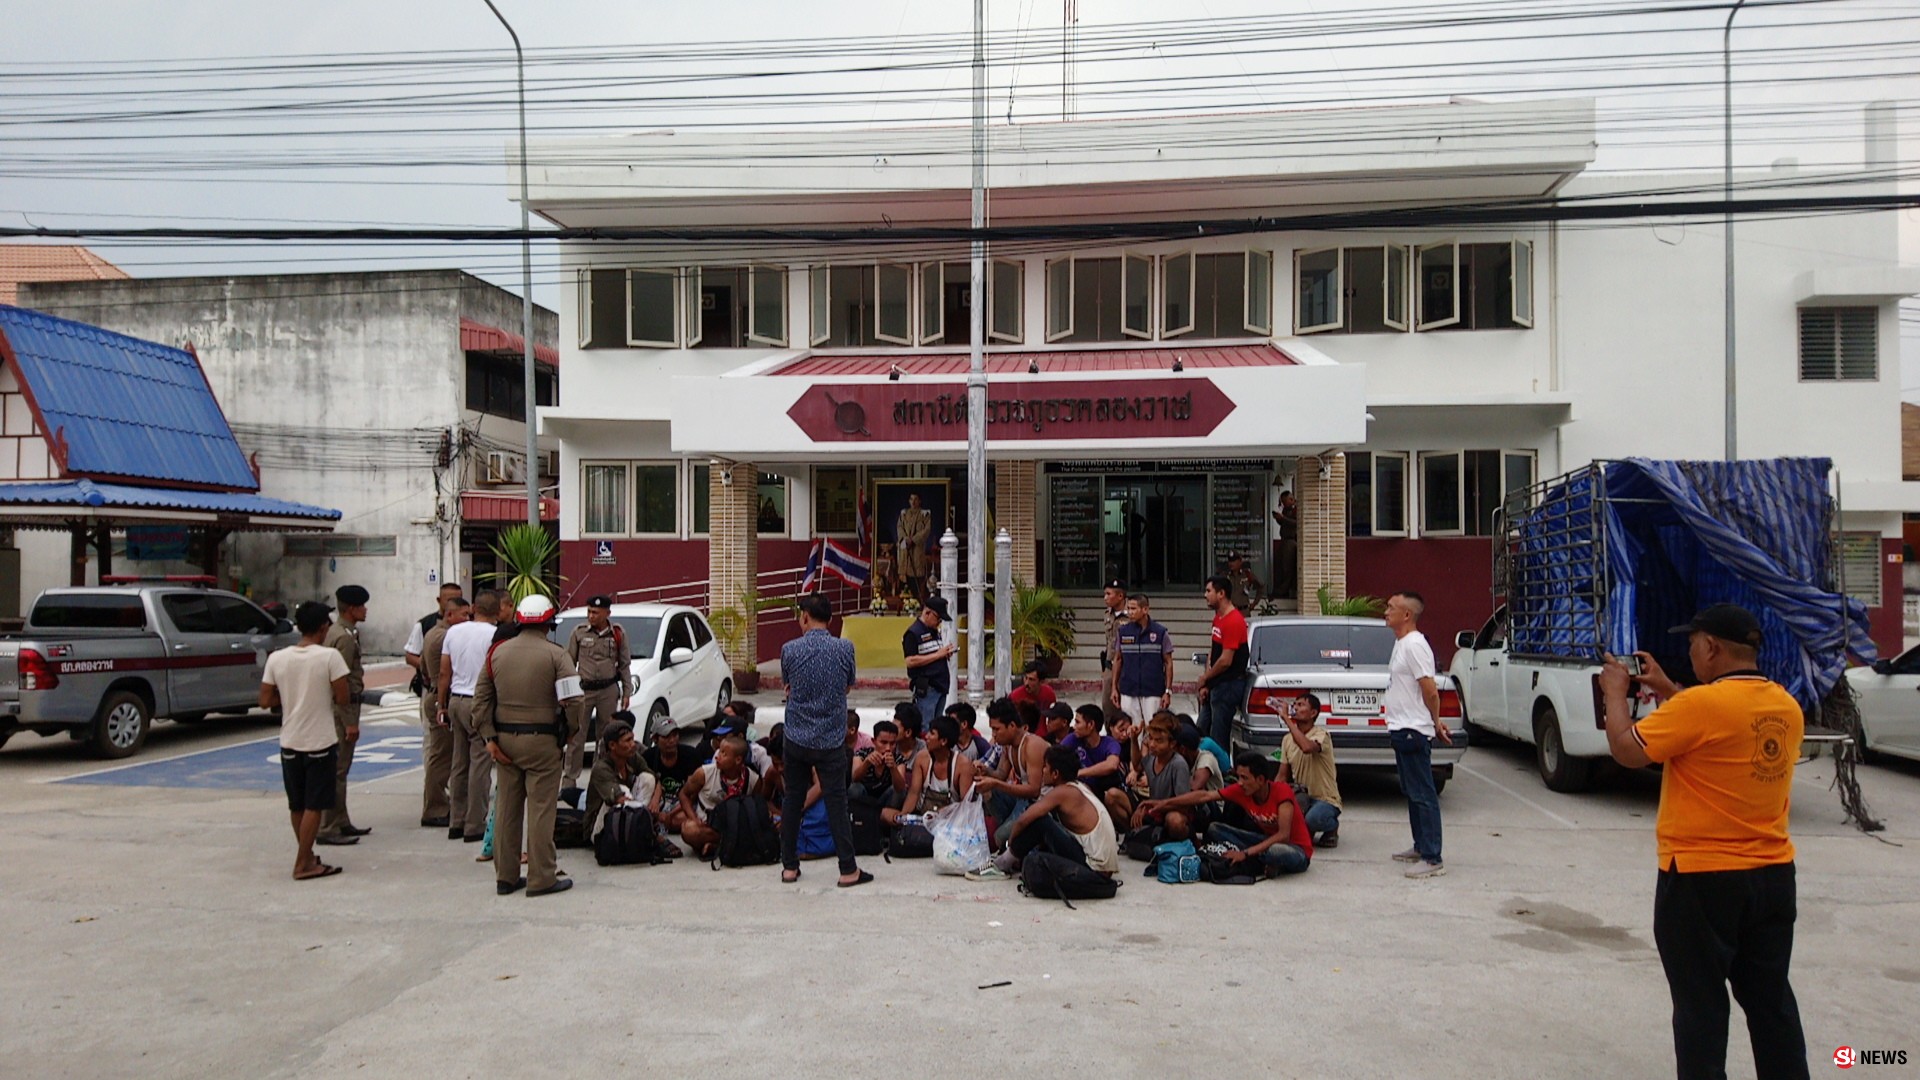 ตำรวจไทยตะลึง สกัดจับกระบะซิ่งหนี-ขนแรงงานเมียนมา 32 คนอัดเป็นปลากระป๋อง